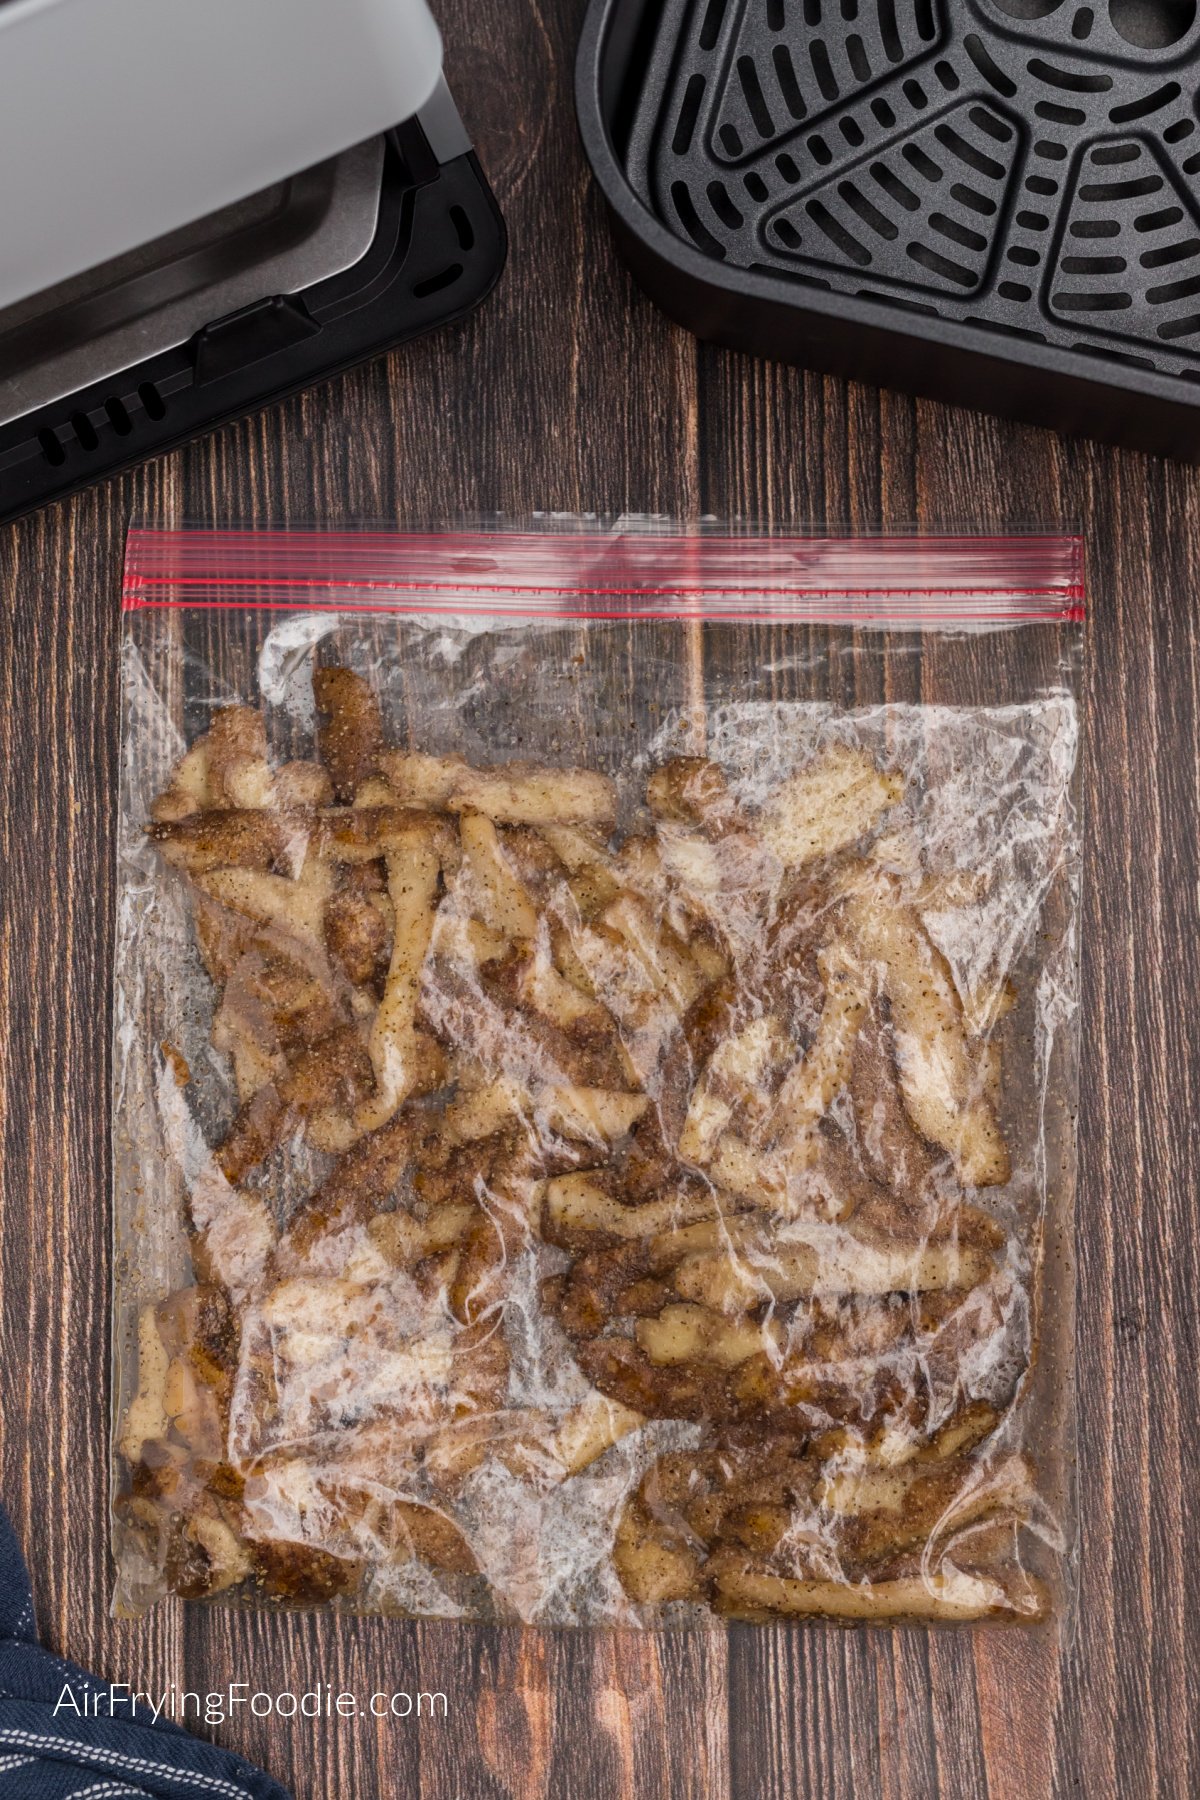 Potato peelings tossed in oil and seasonings in a plastic baggie.